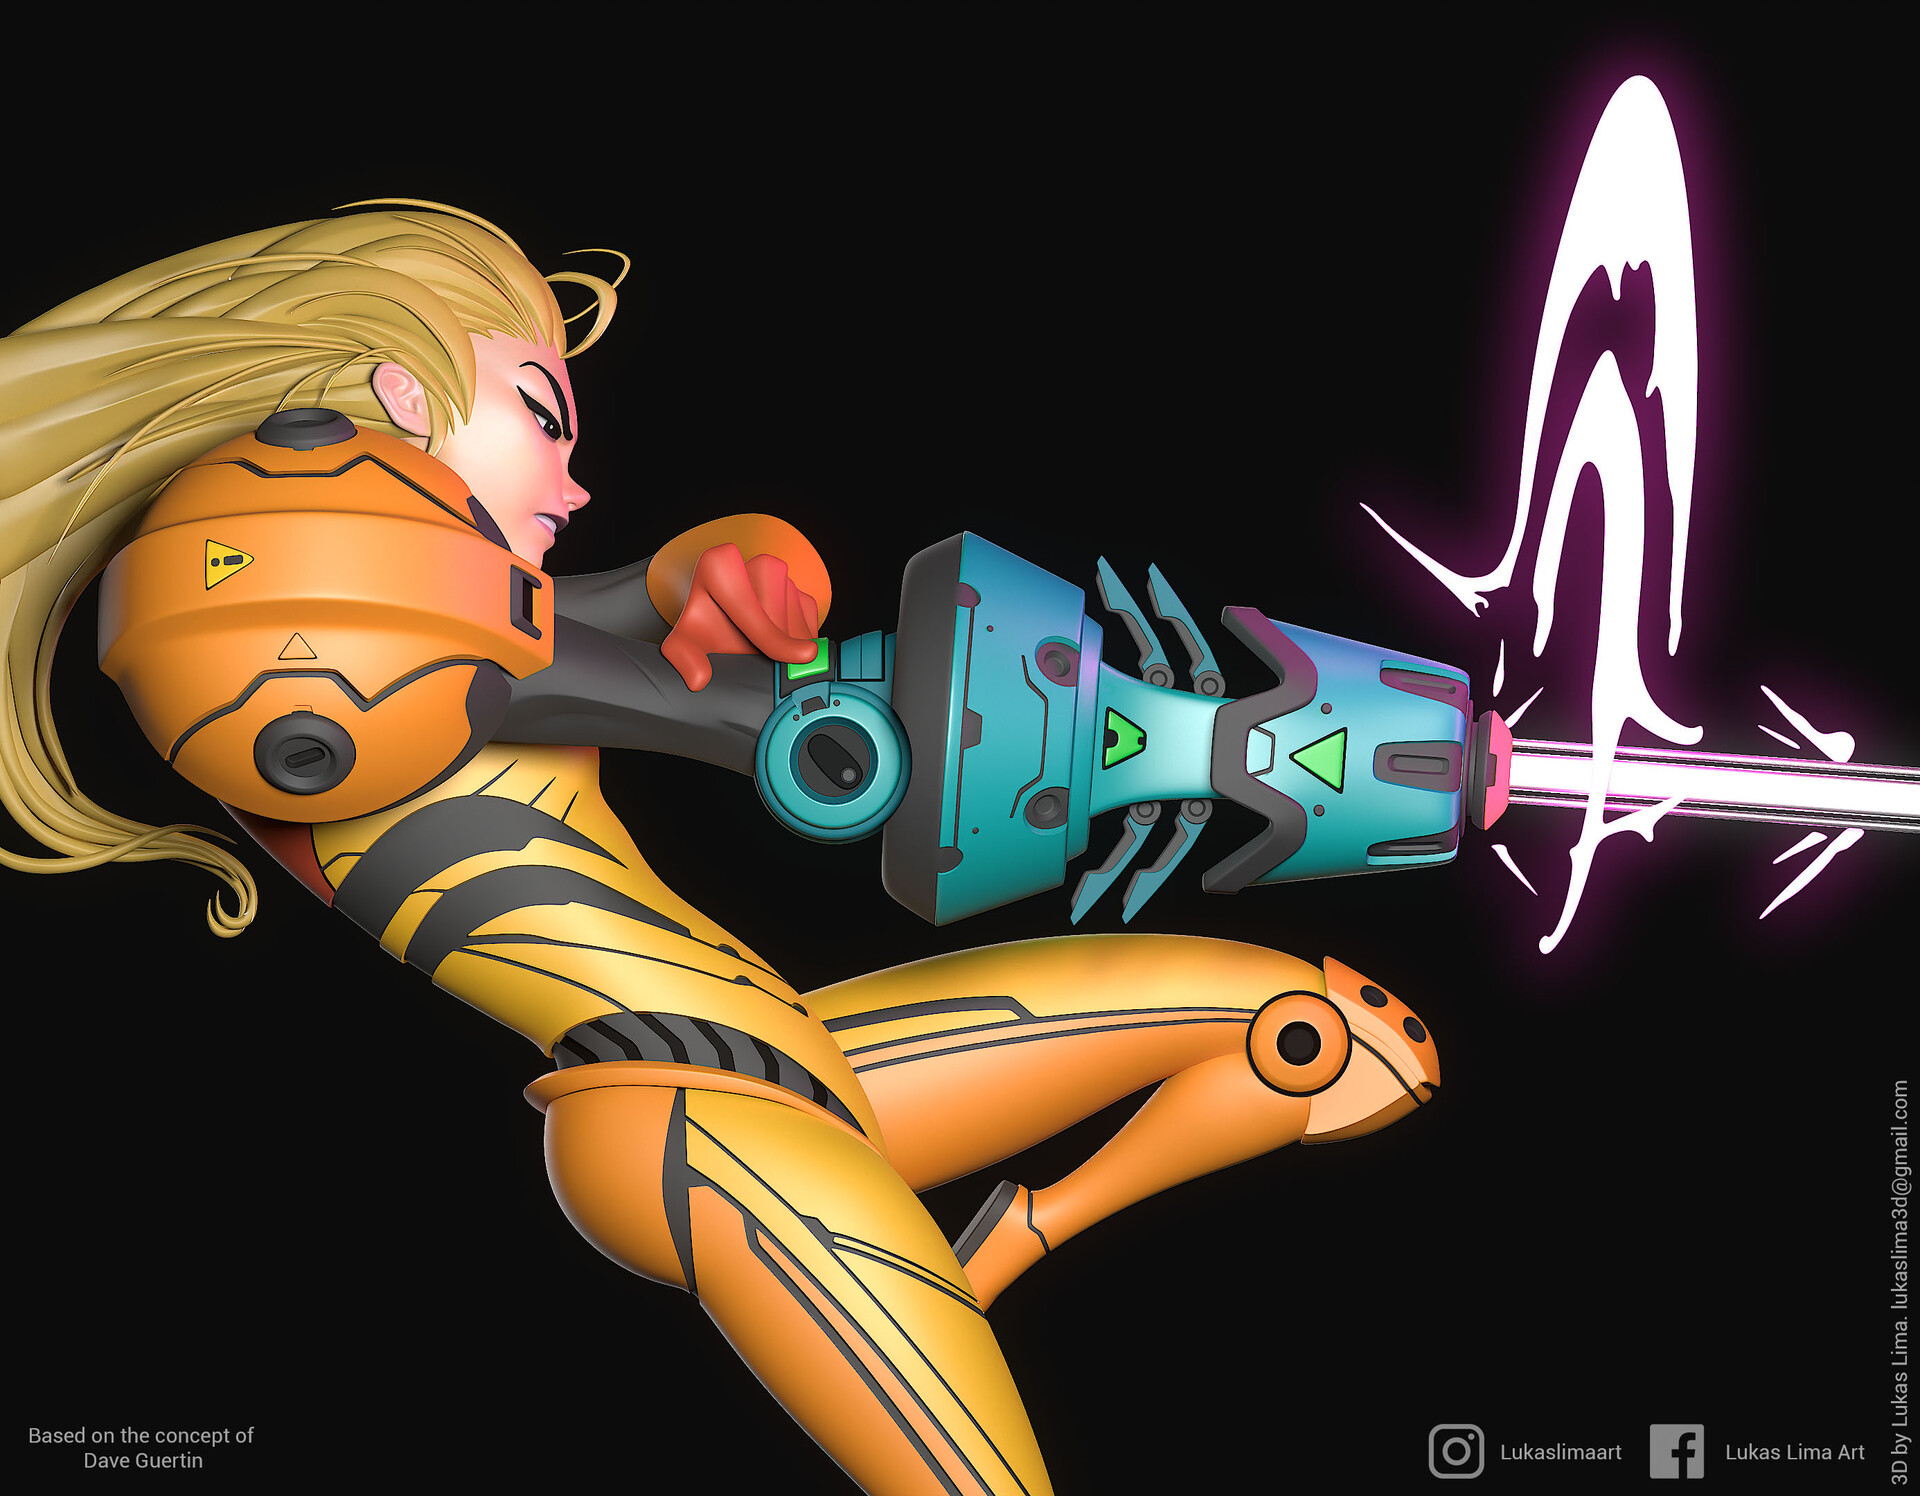 Lukas Lima ArtStation Video Games Video Game Girls Metroid Samus Aran Video Game Art Science Fiction 1920x1496